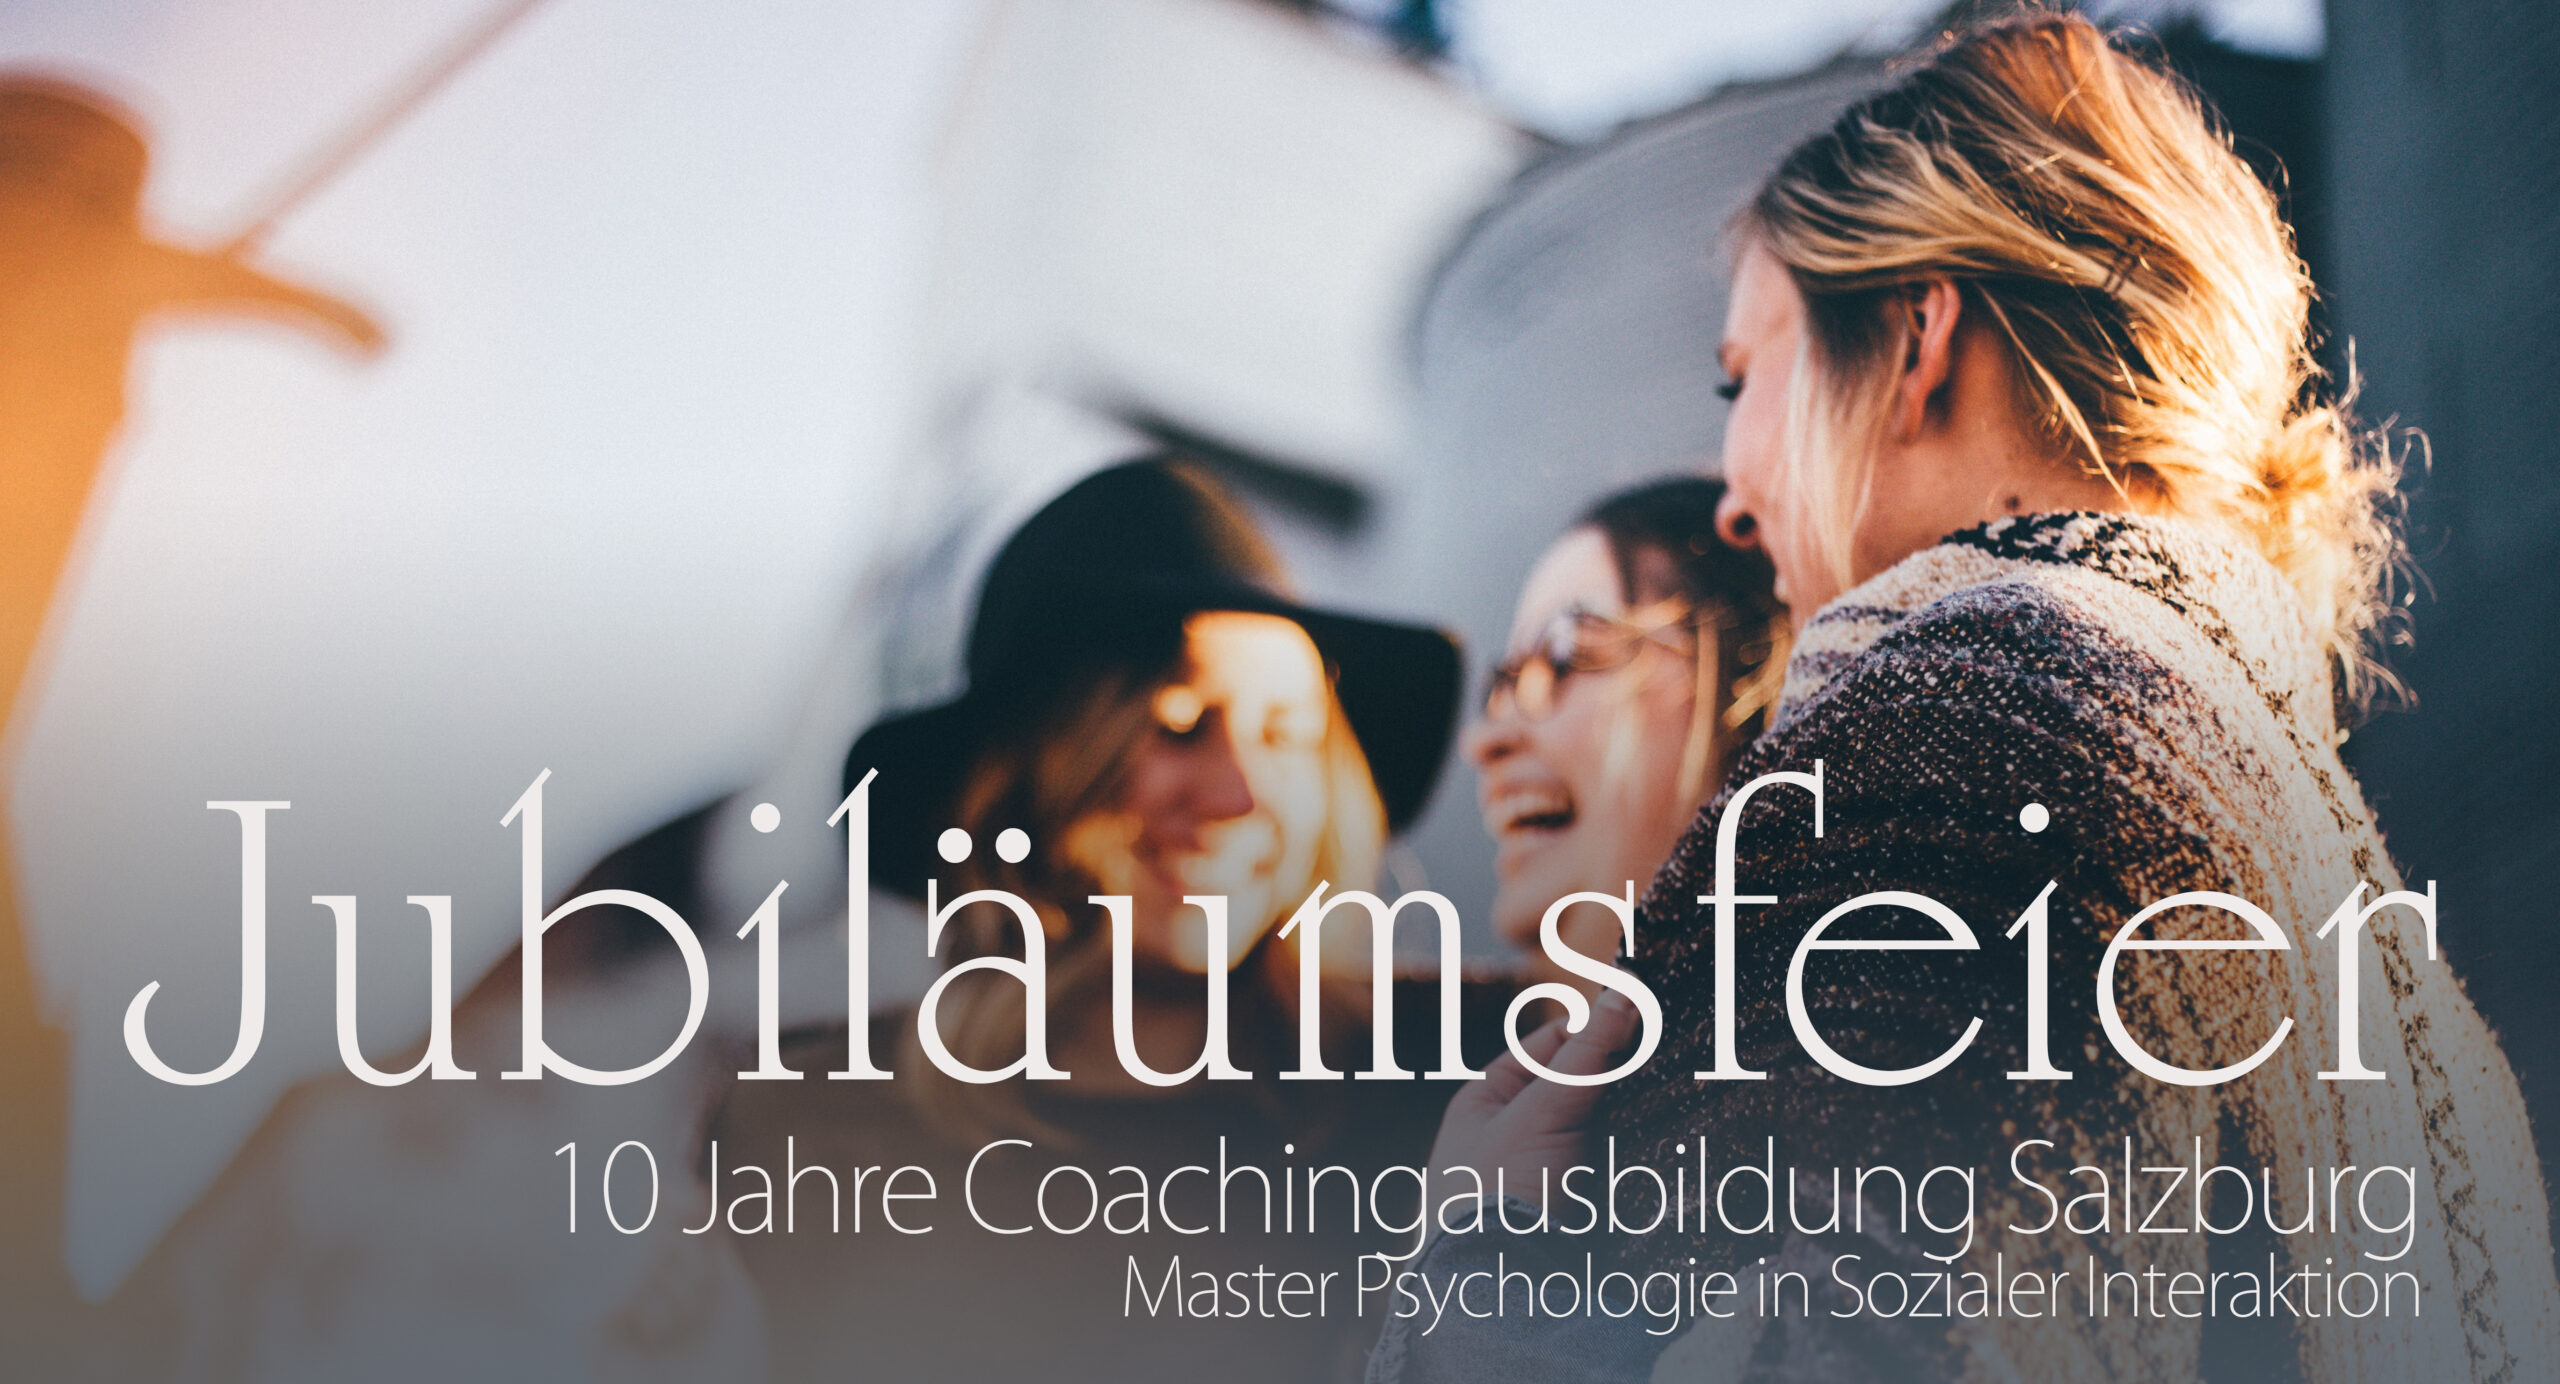 Banner Bind mit Beschriftung: Jubiläumsfeier, 10 Jahre Coachingausbildung Salzburg, Master Psychologie in Sozialer Interaktion